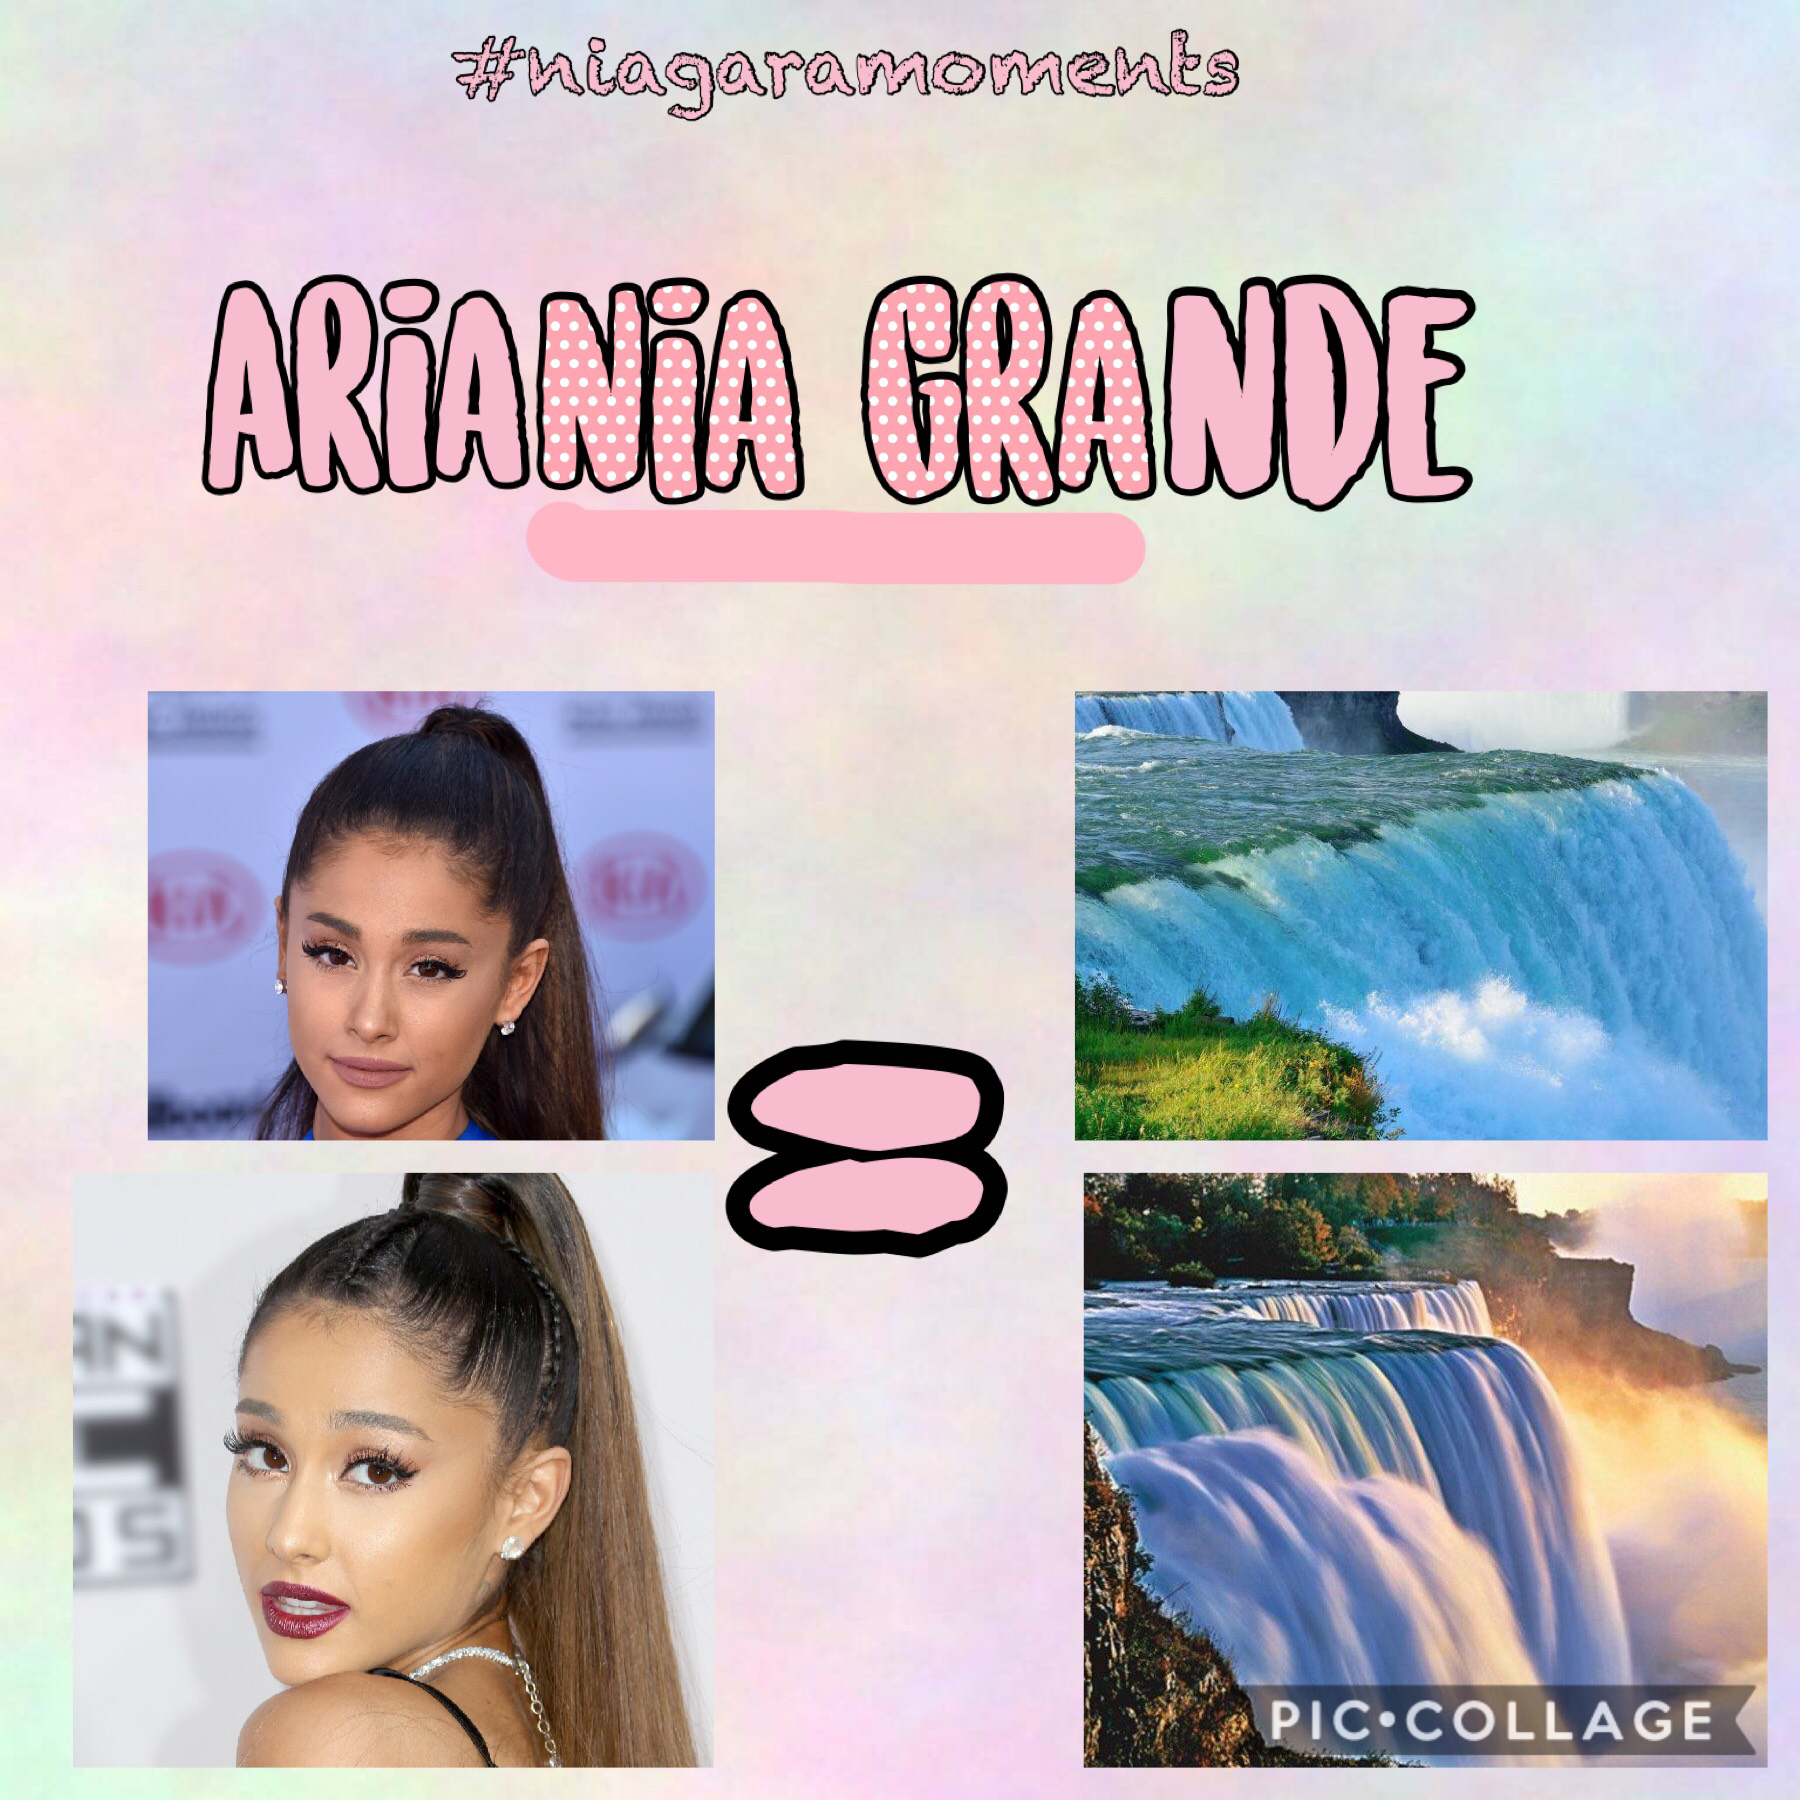 Ariana grande is a Niagara 🤭🤫